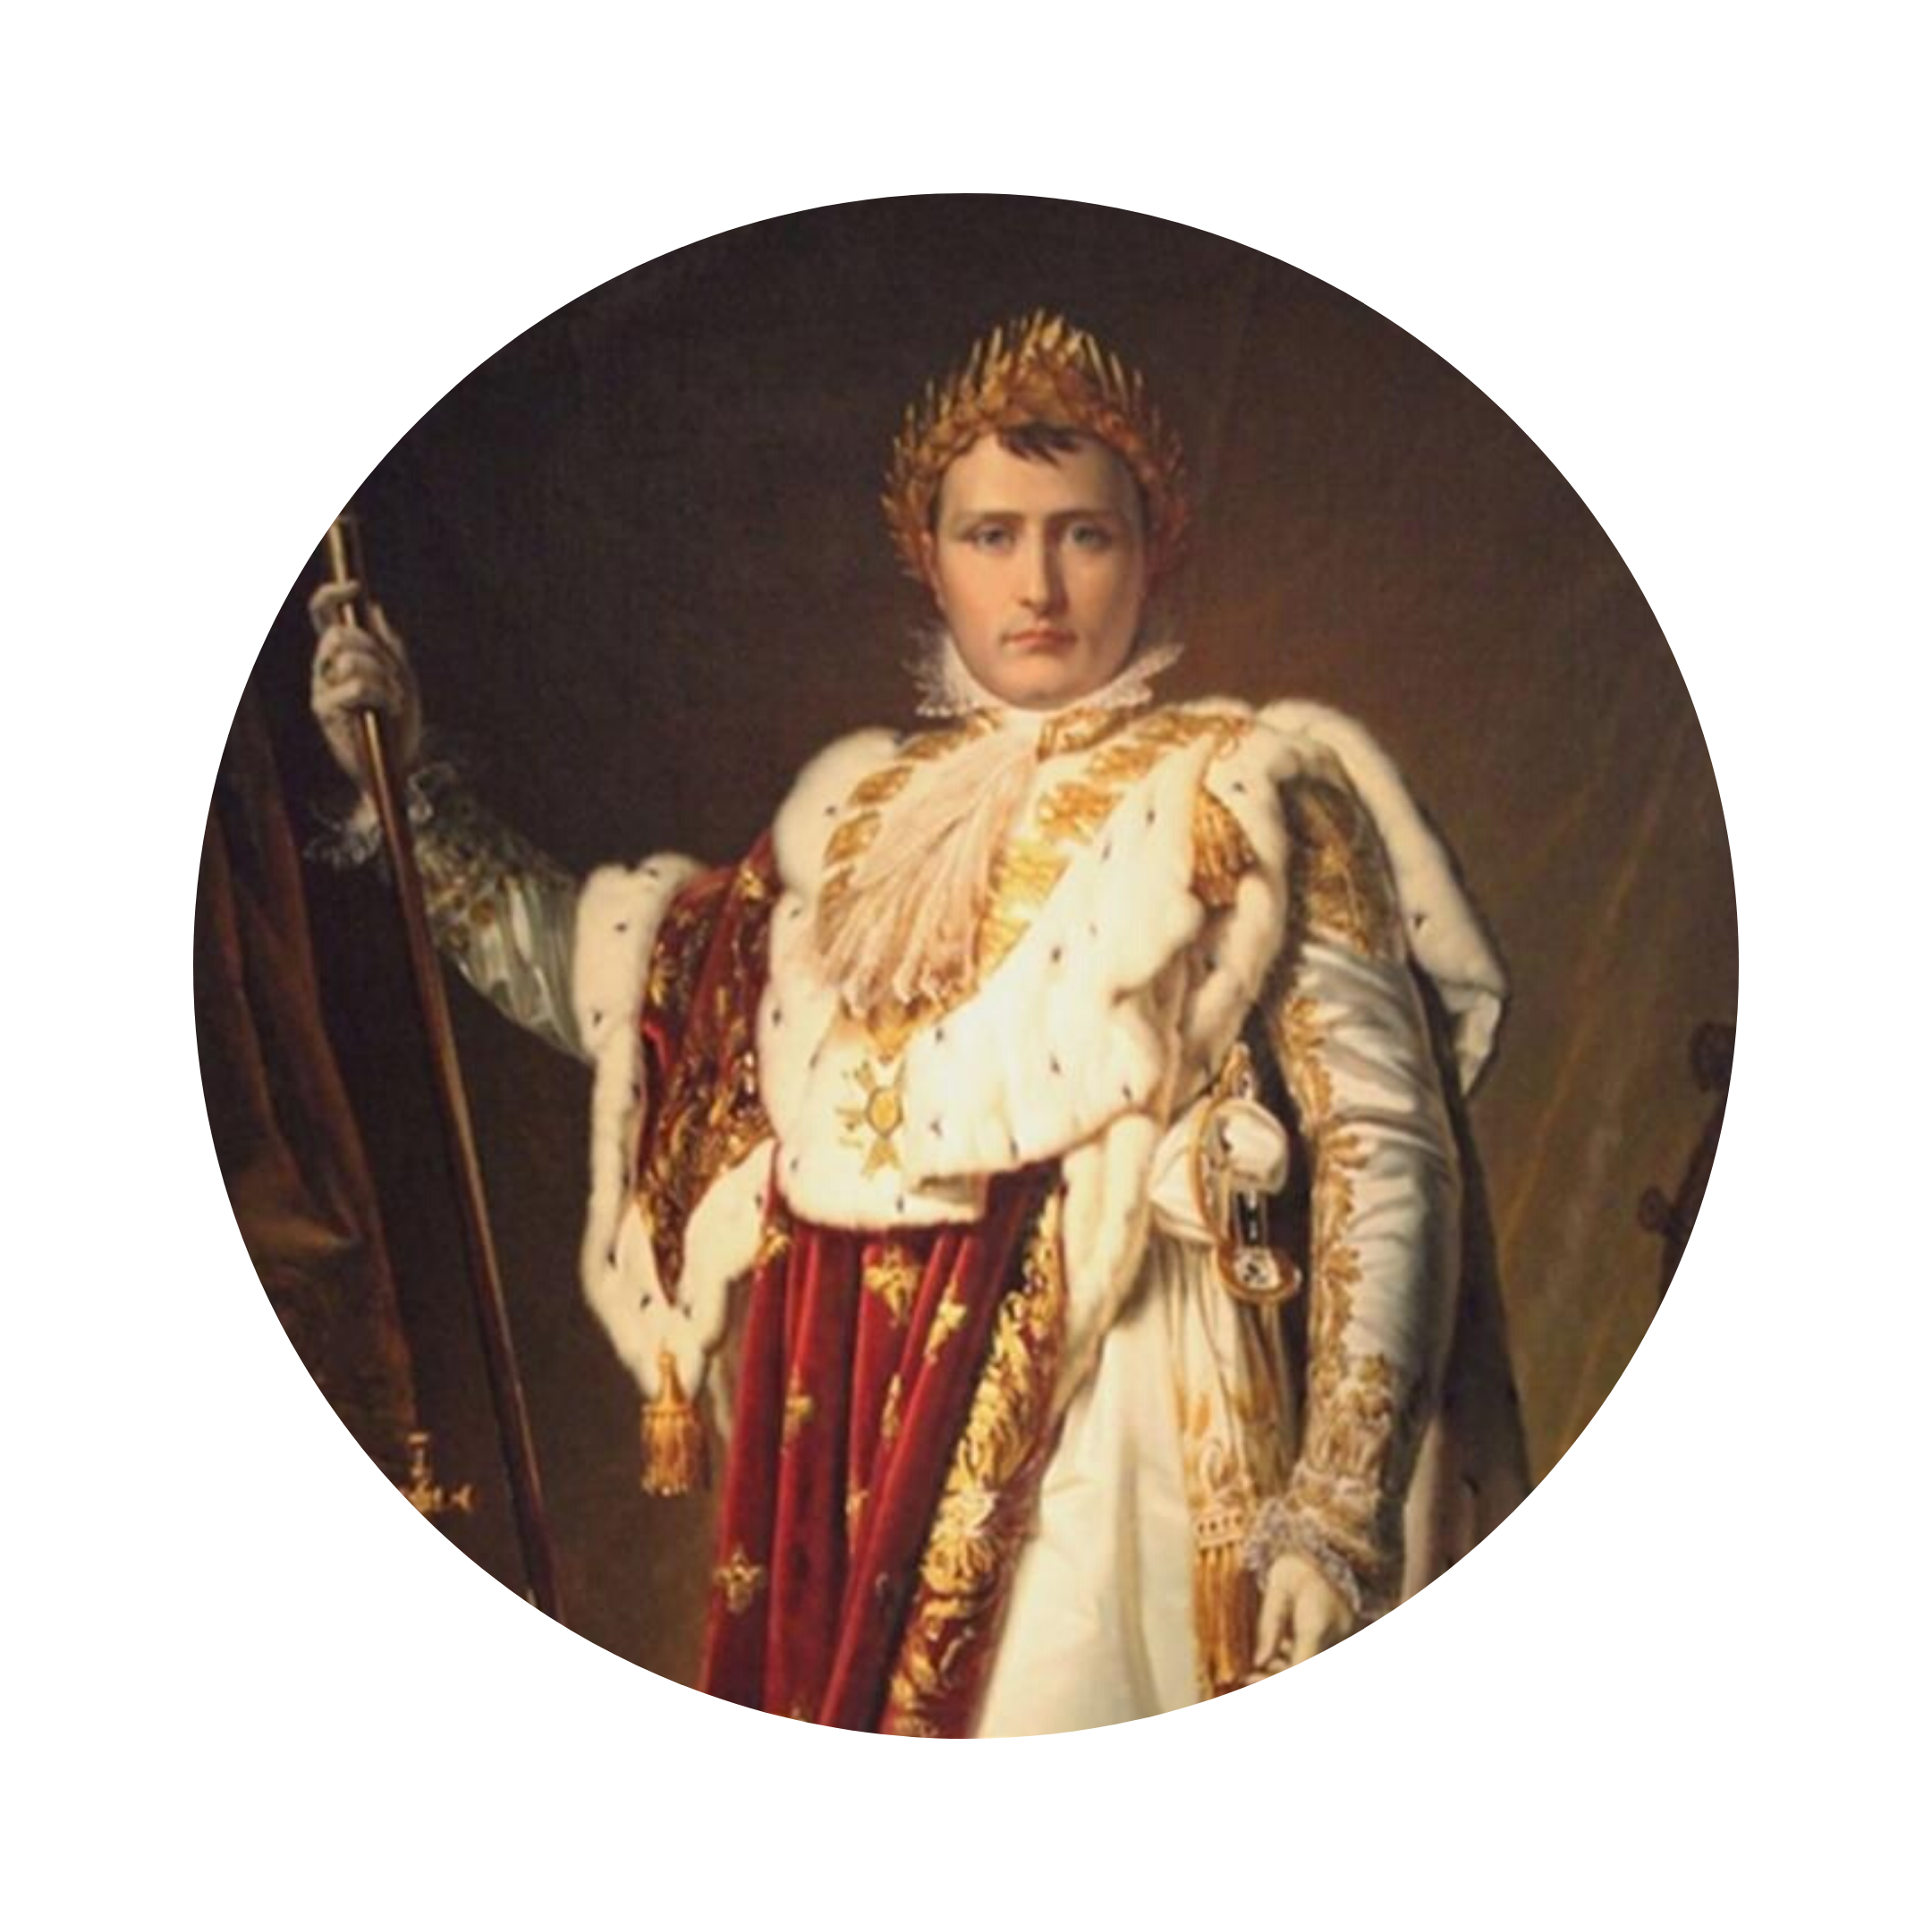 Molteplici sono stati i rapporti tra Napoleone Bonaparte e l'Osservatorio di Brera. Napoleone apprezzava le qualità morali e scientifiche di Oriani, che insignì di titoli onorifici e a cui affidò diversi incarichi importanti.